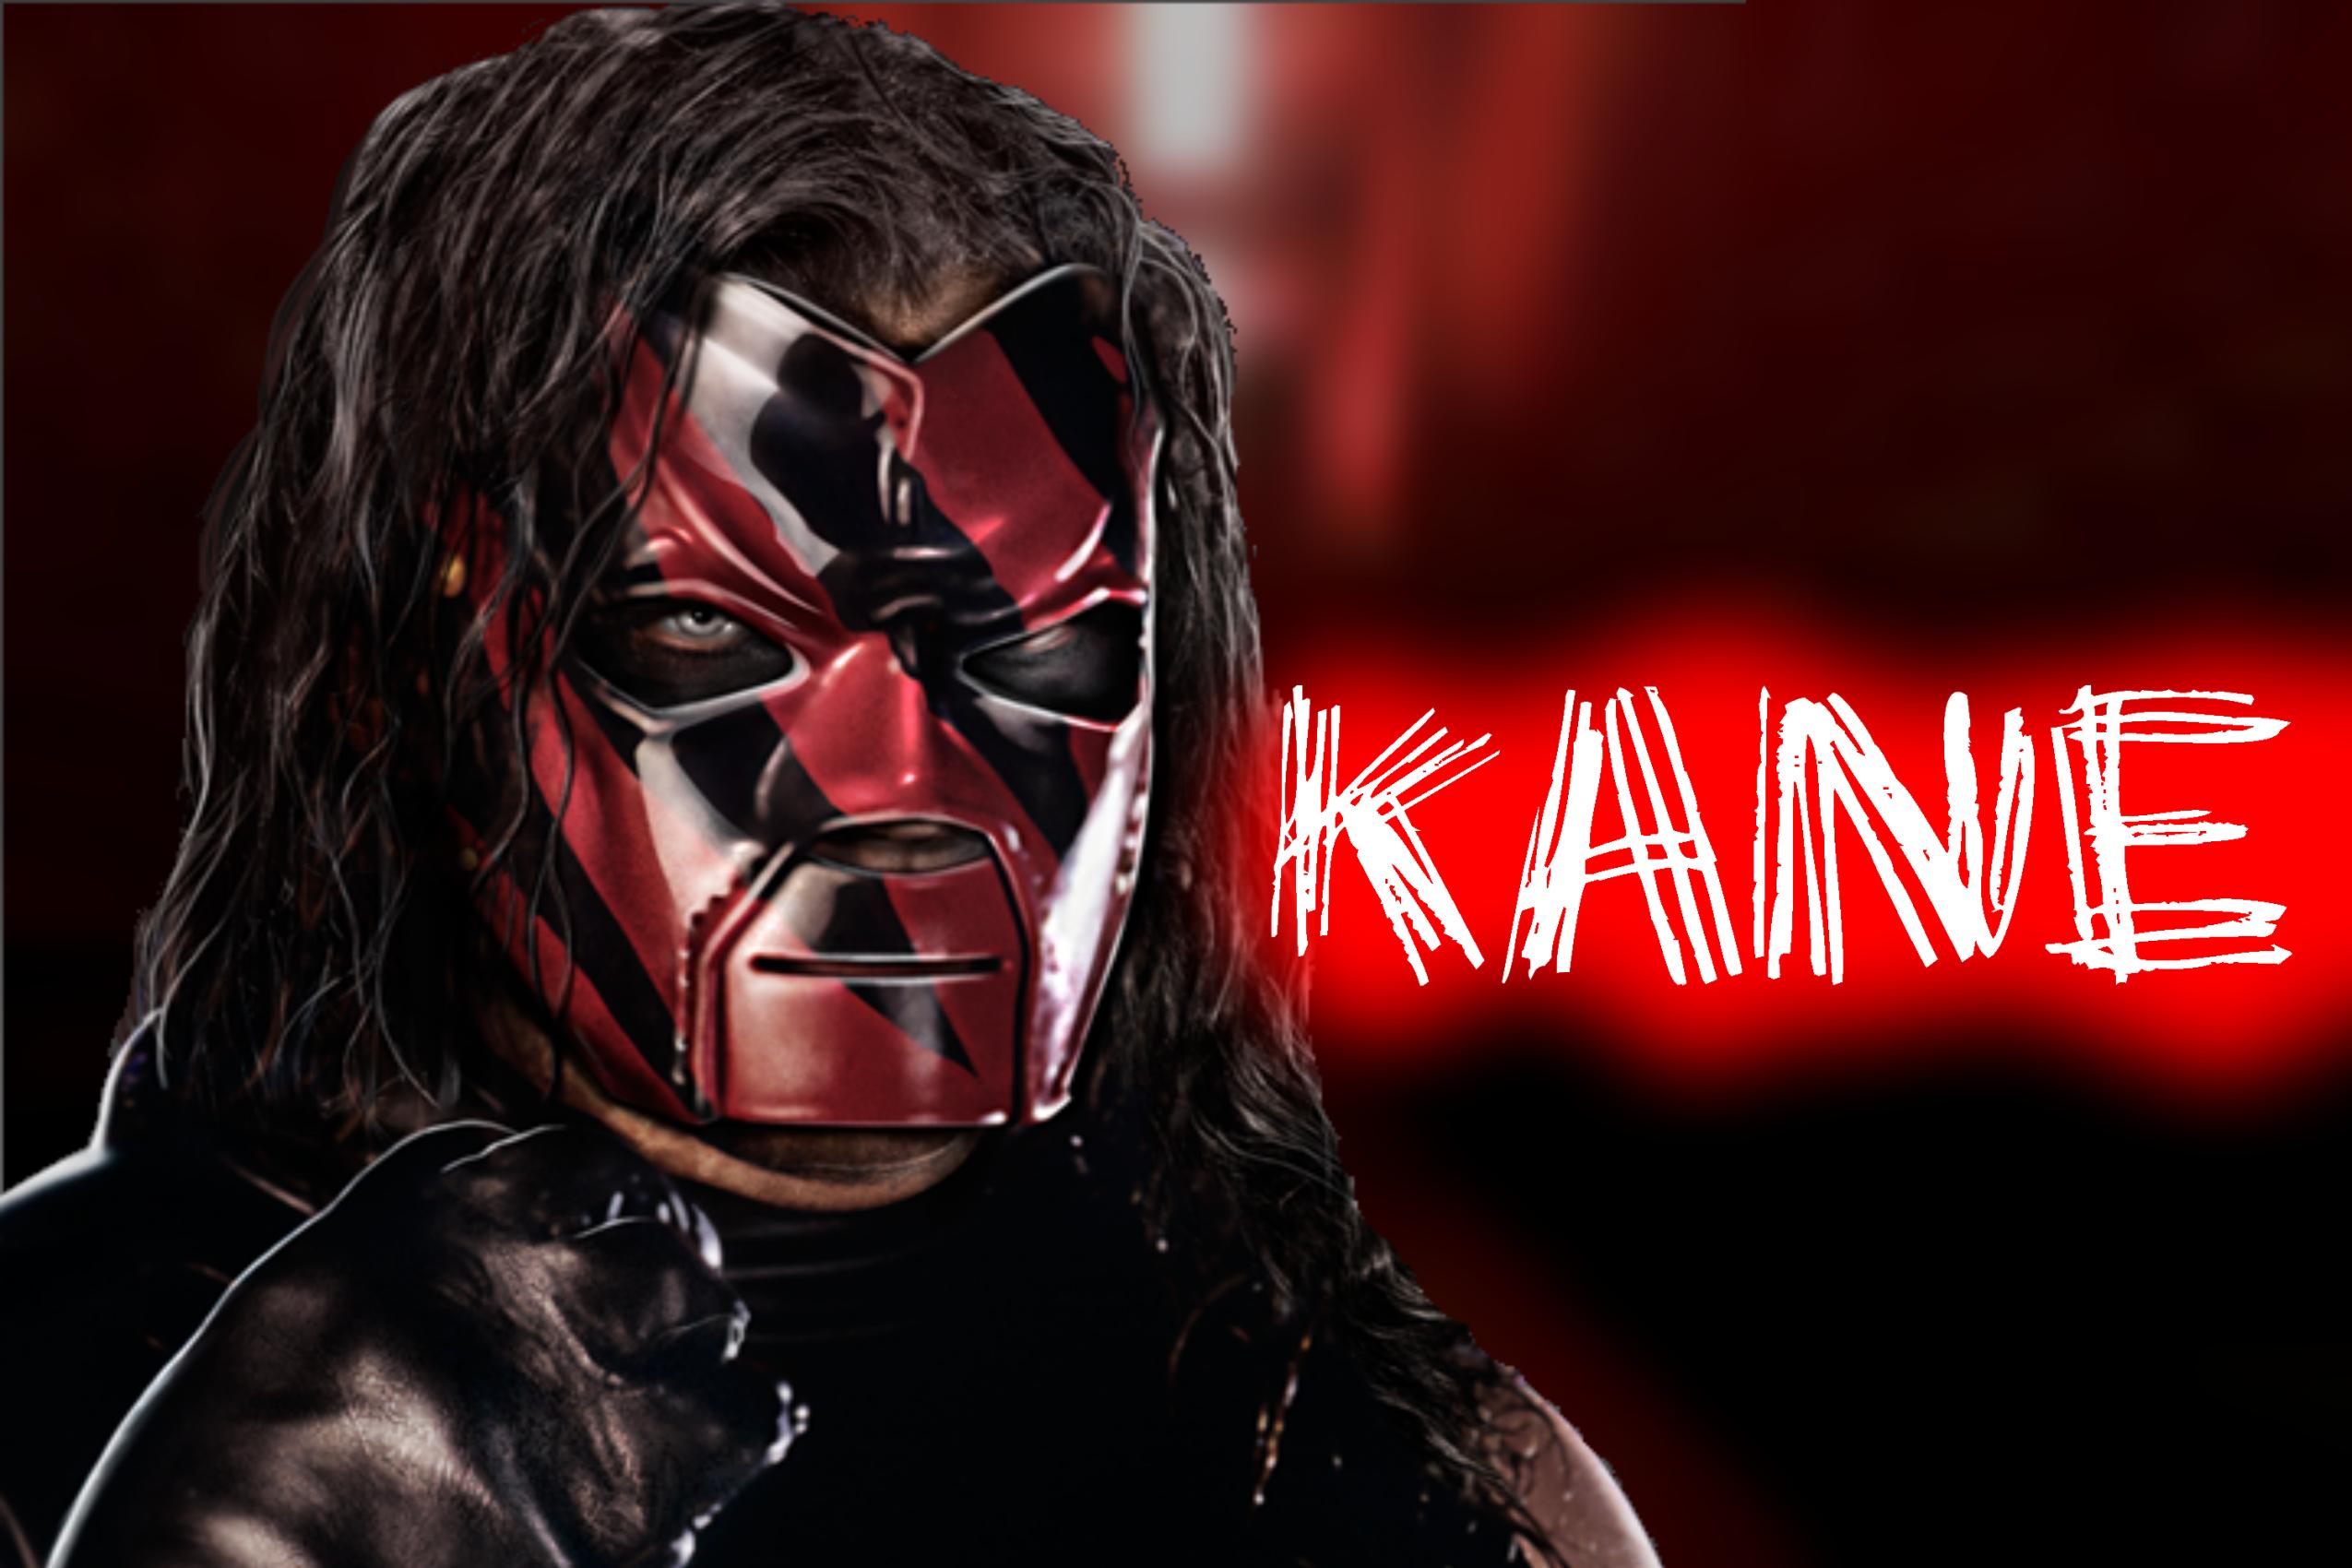 Melhores papéis de parede de Kane (Lutador) para tela do telefone